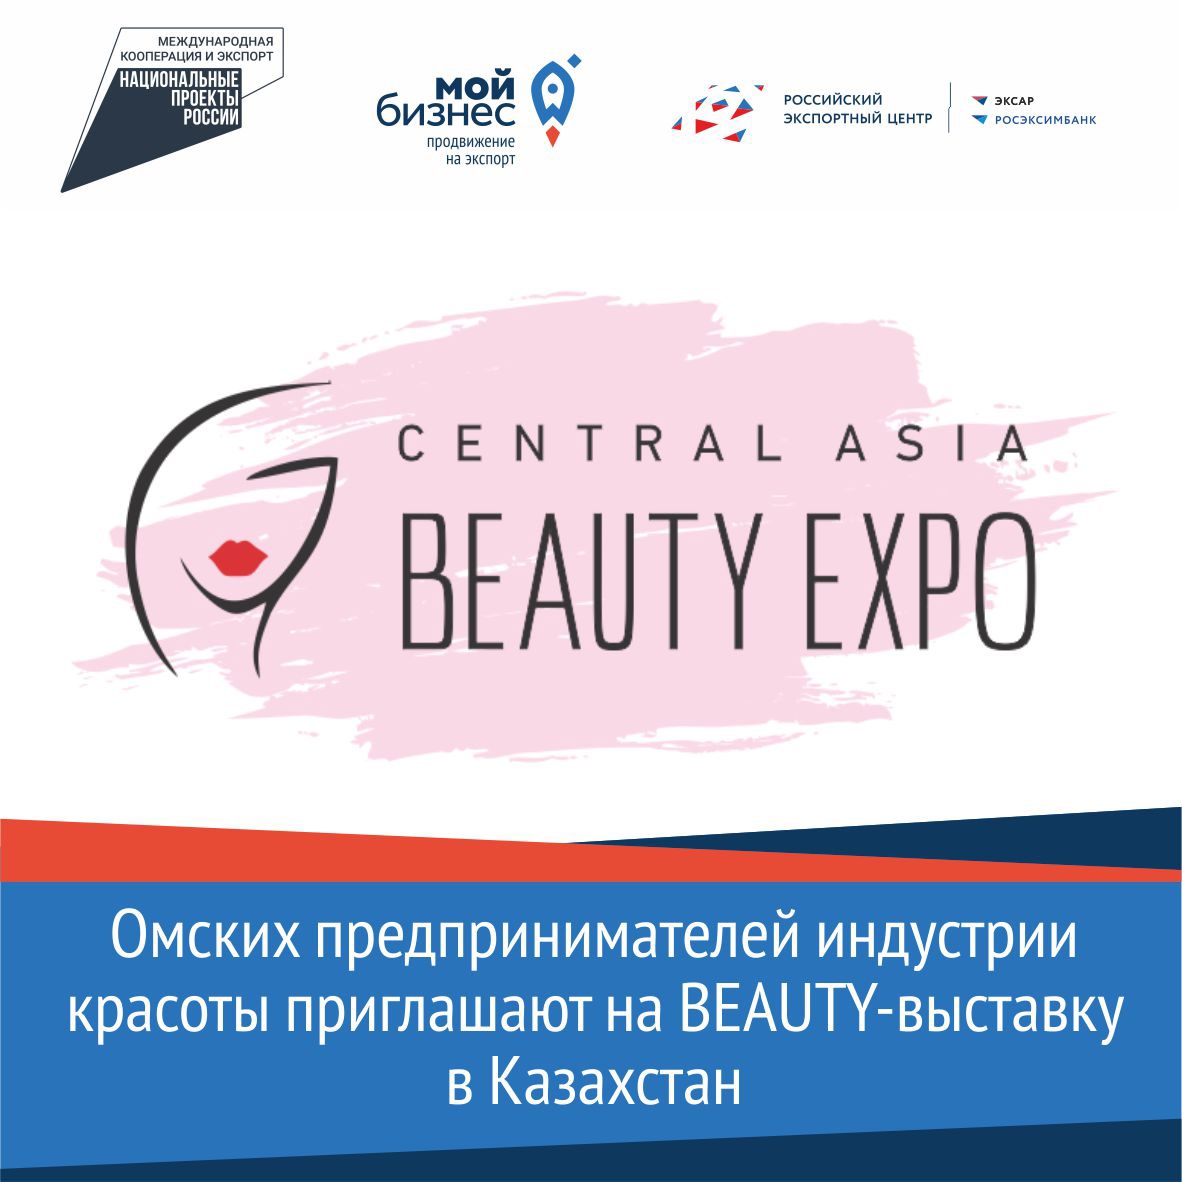 Омских предпринимателей индустрии красоты приглашают на beauty-выставку в Казахстан